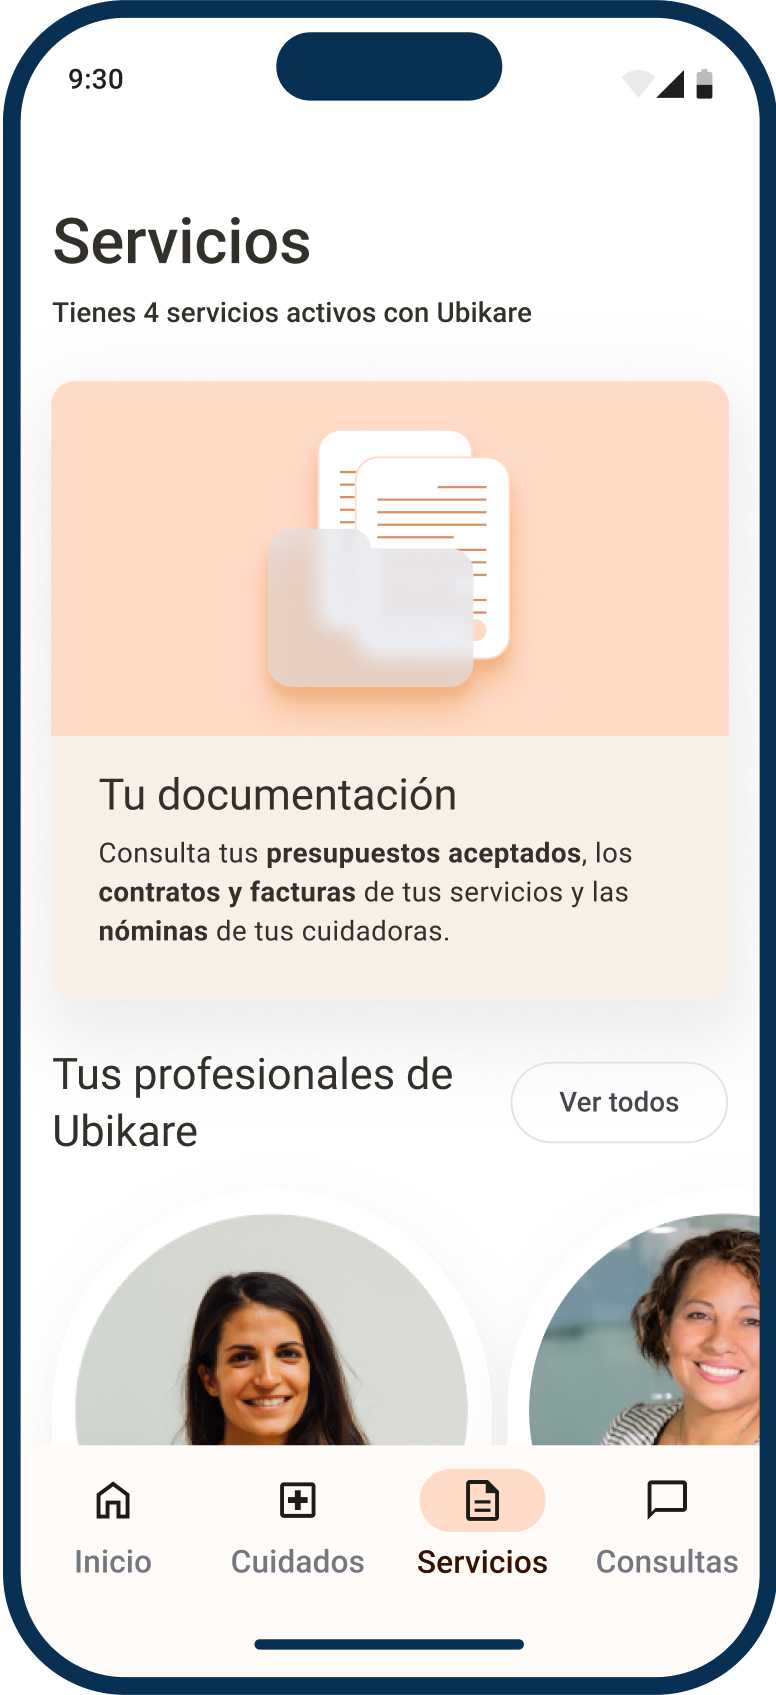 Ubikare app-a, Zerbitzu pantaila Ubikare profesional zerrenda erakusten